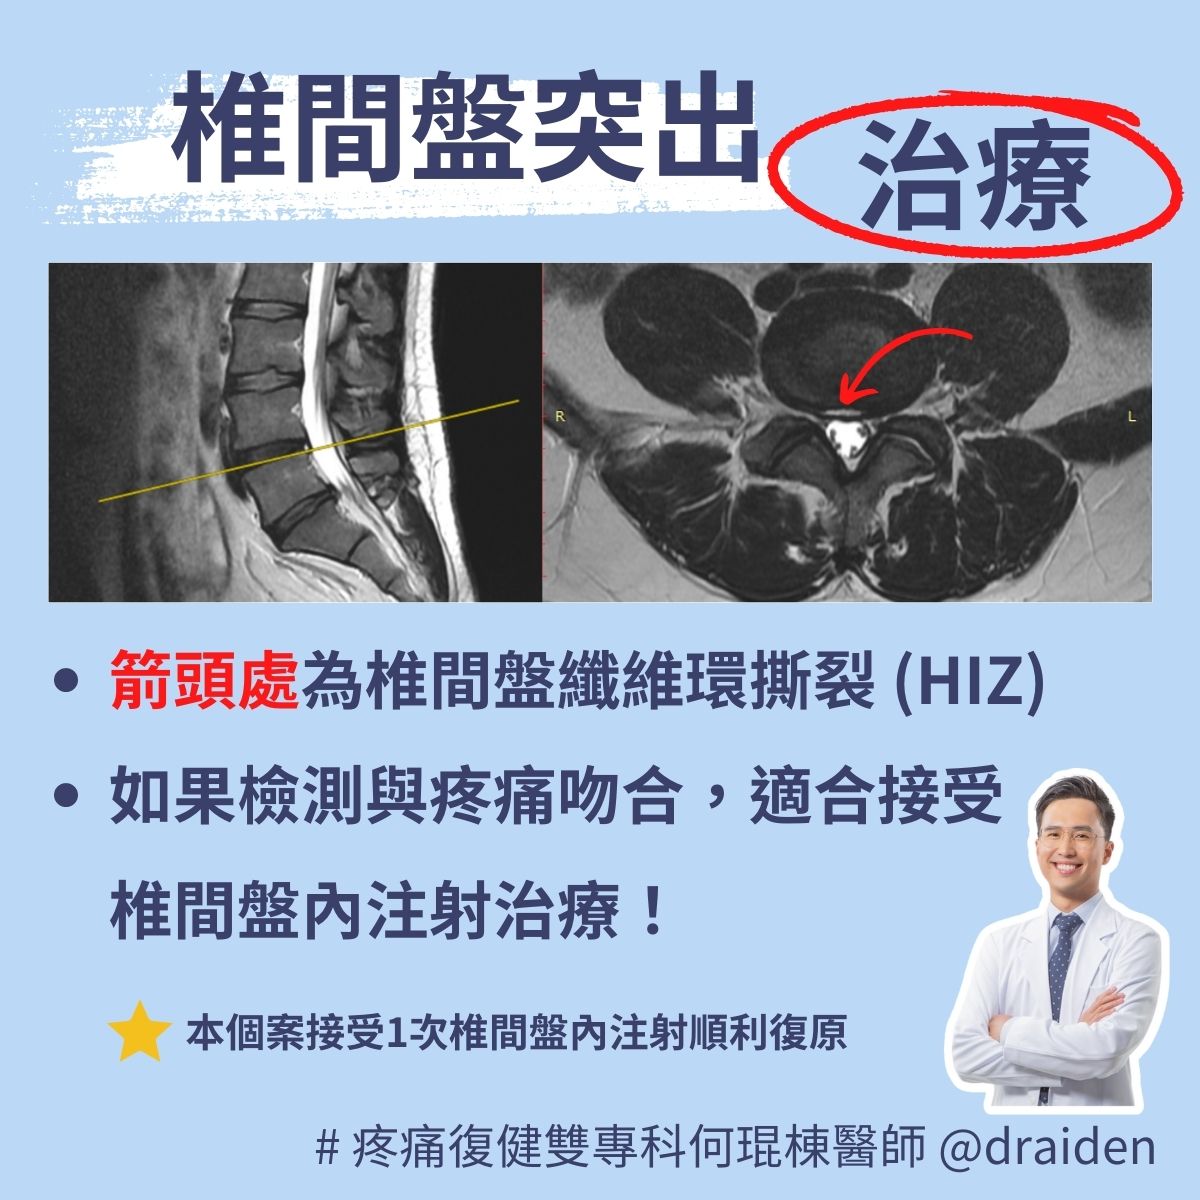 椎間盤纖維環撕裂治療，High Intensity Zone (HIZ) treatment